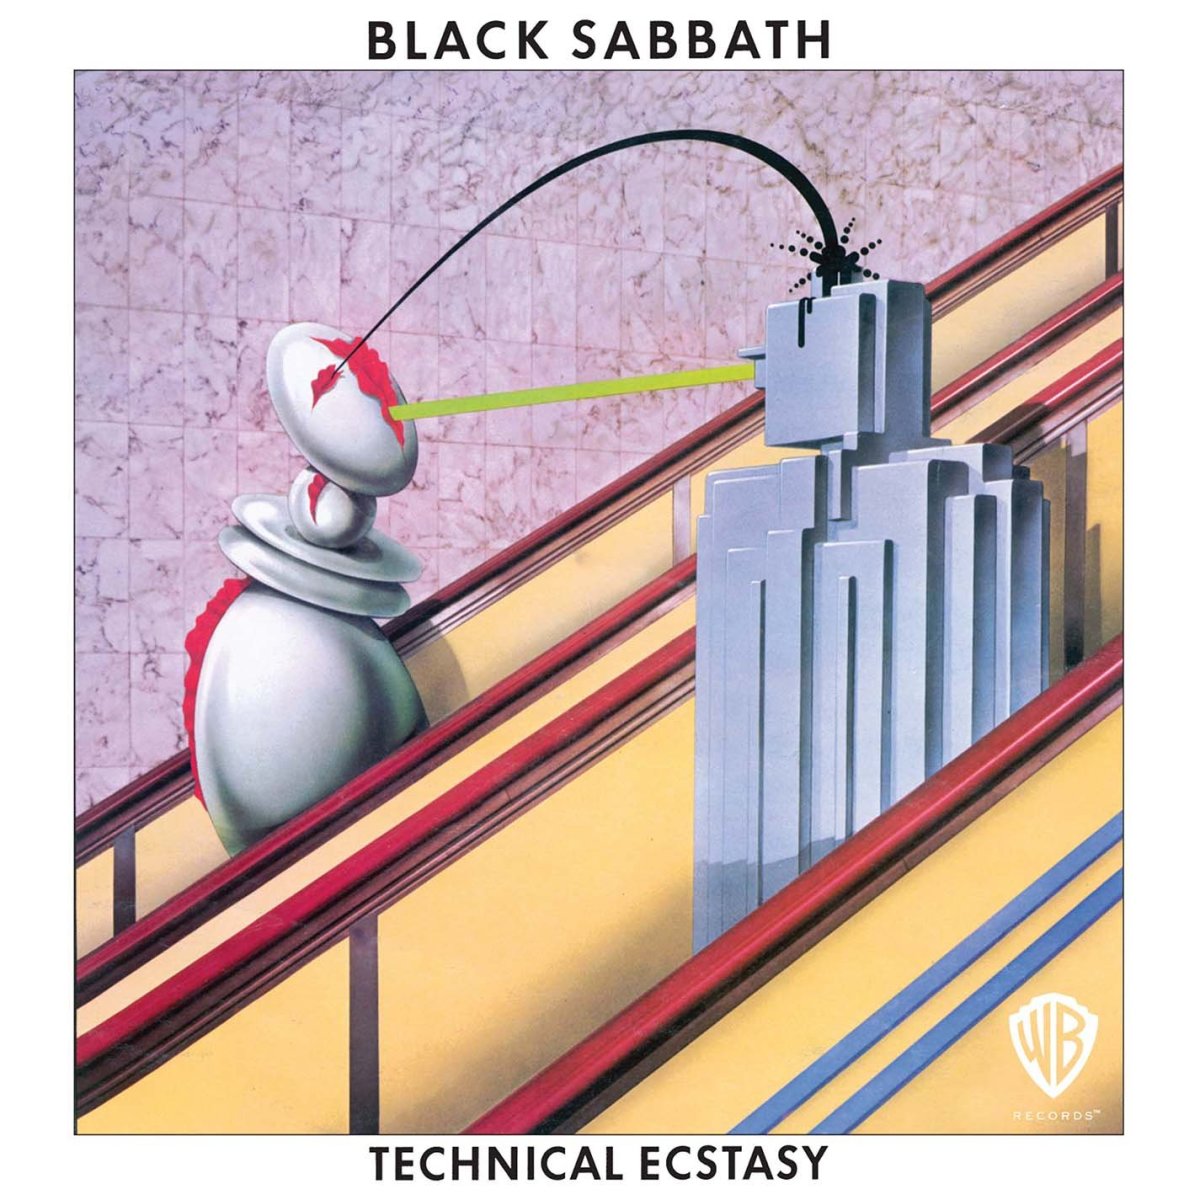 Revisiting Black Sabbath's 